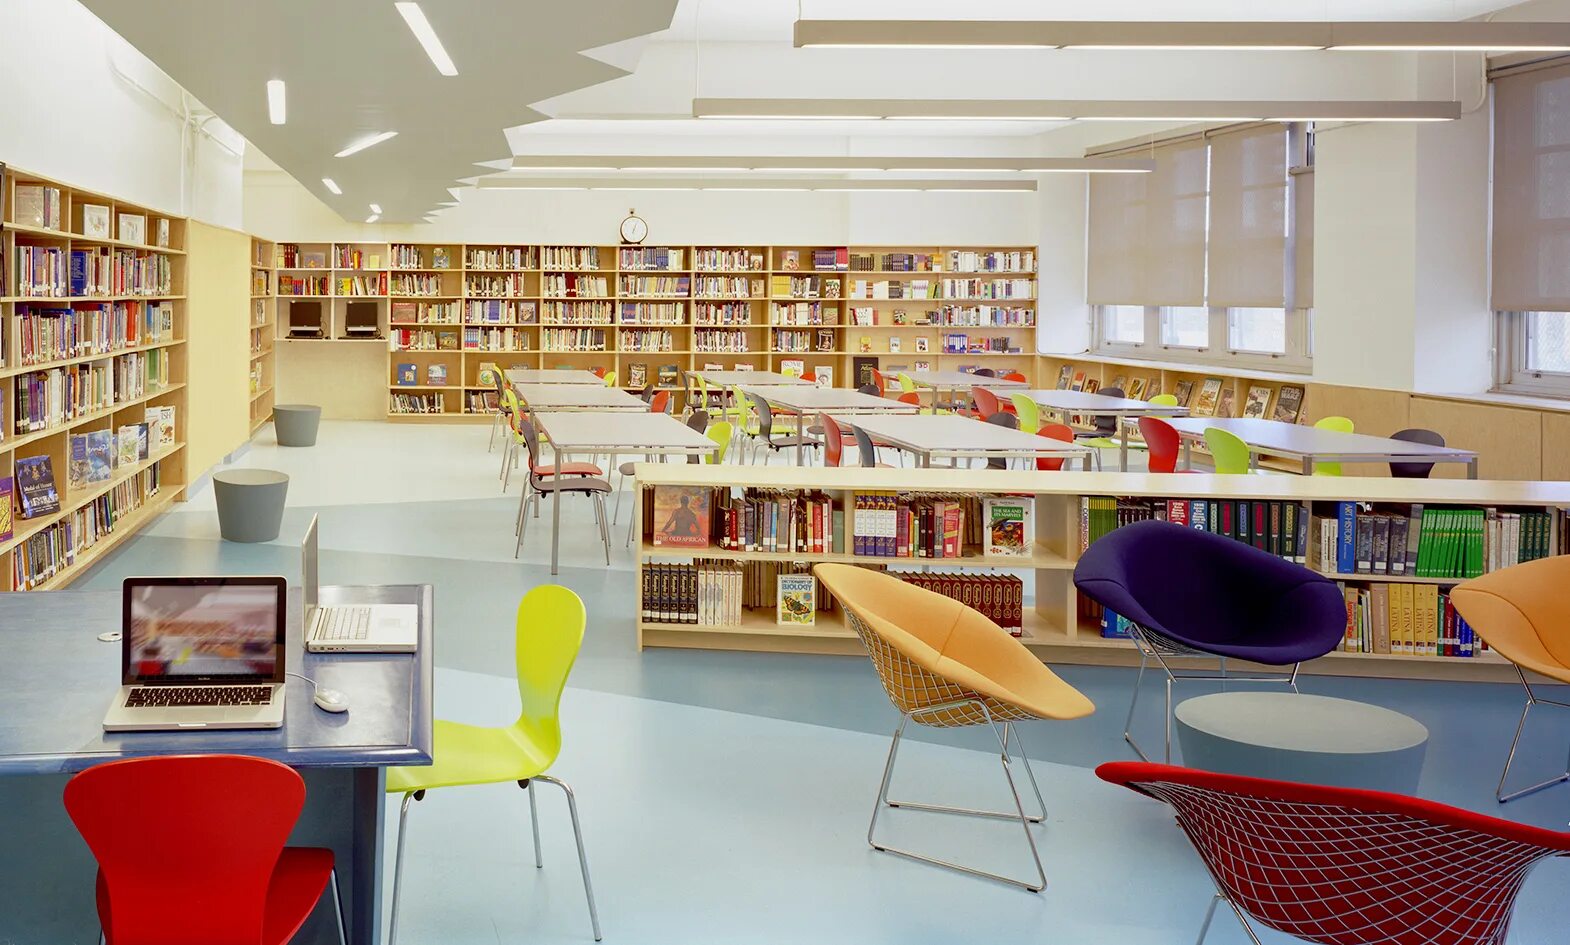 Xz library. Интерьер современной библиотеки. Библиотека в школе. Современная Школьная библиотека. Современная библиотека в школе.